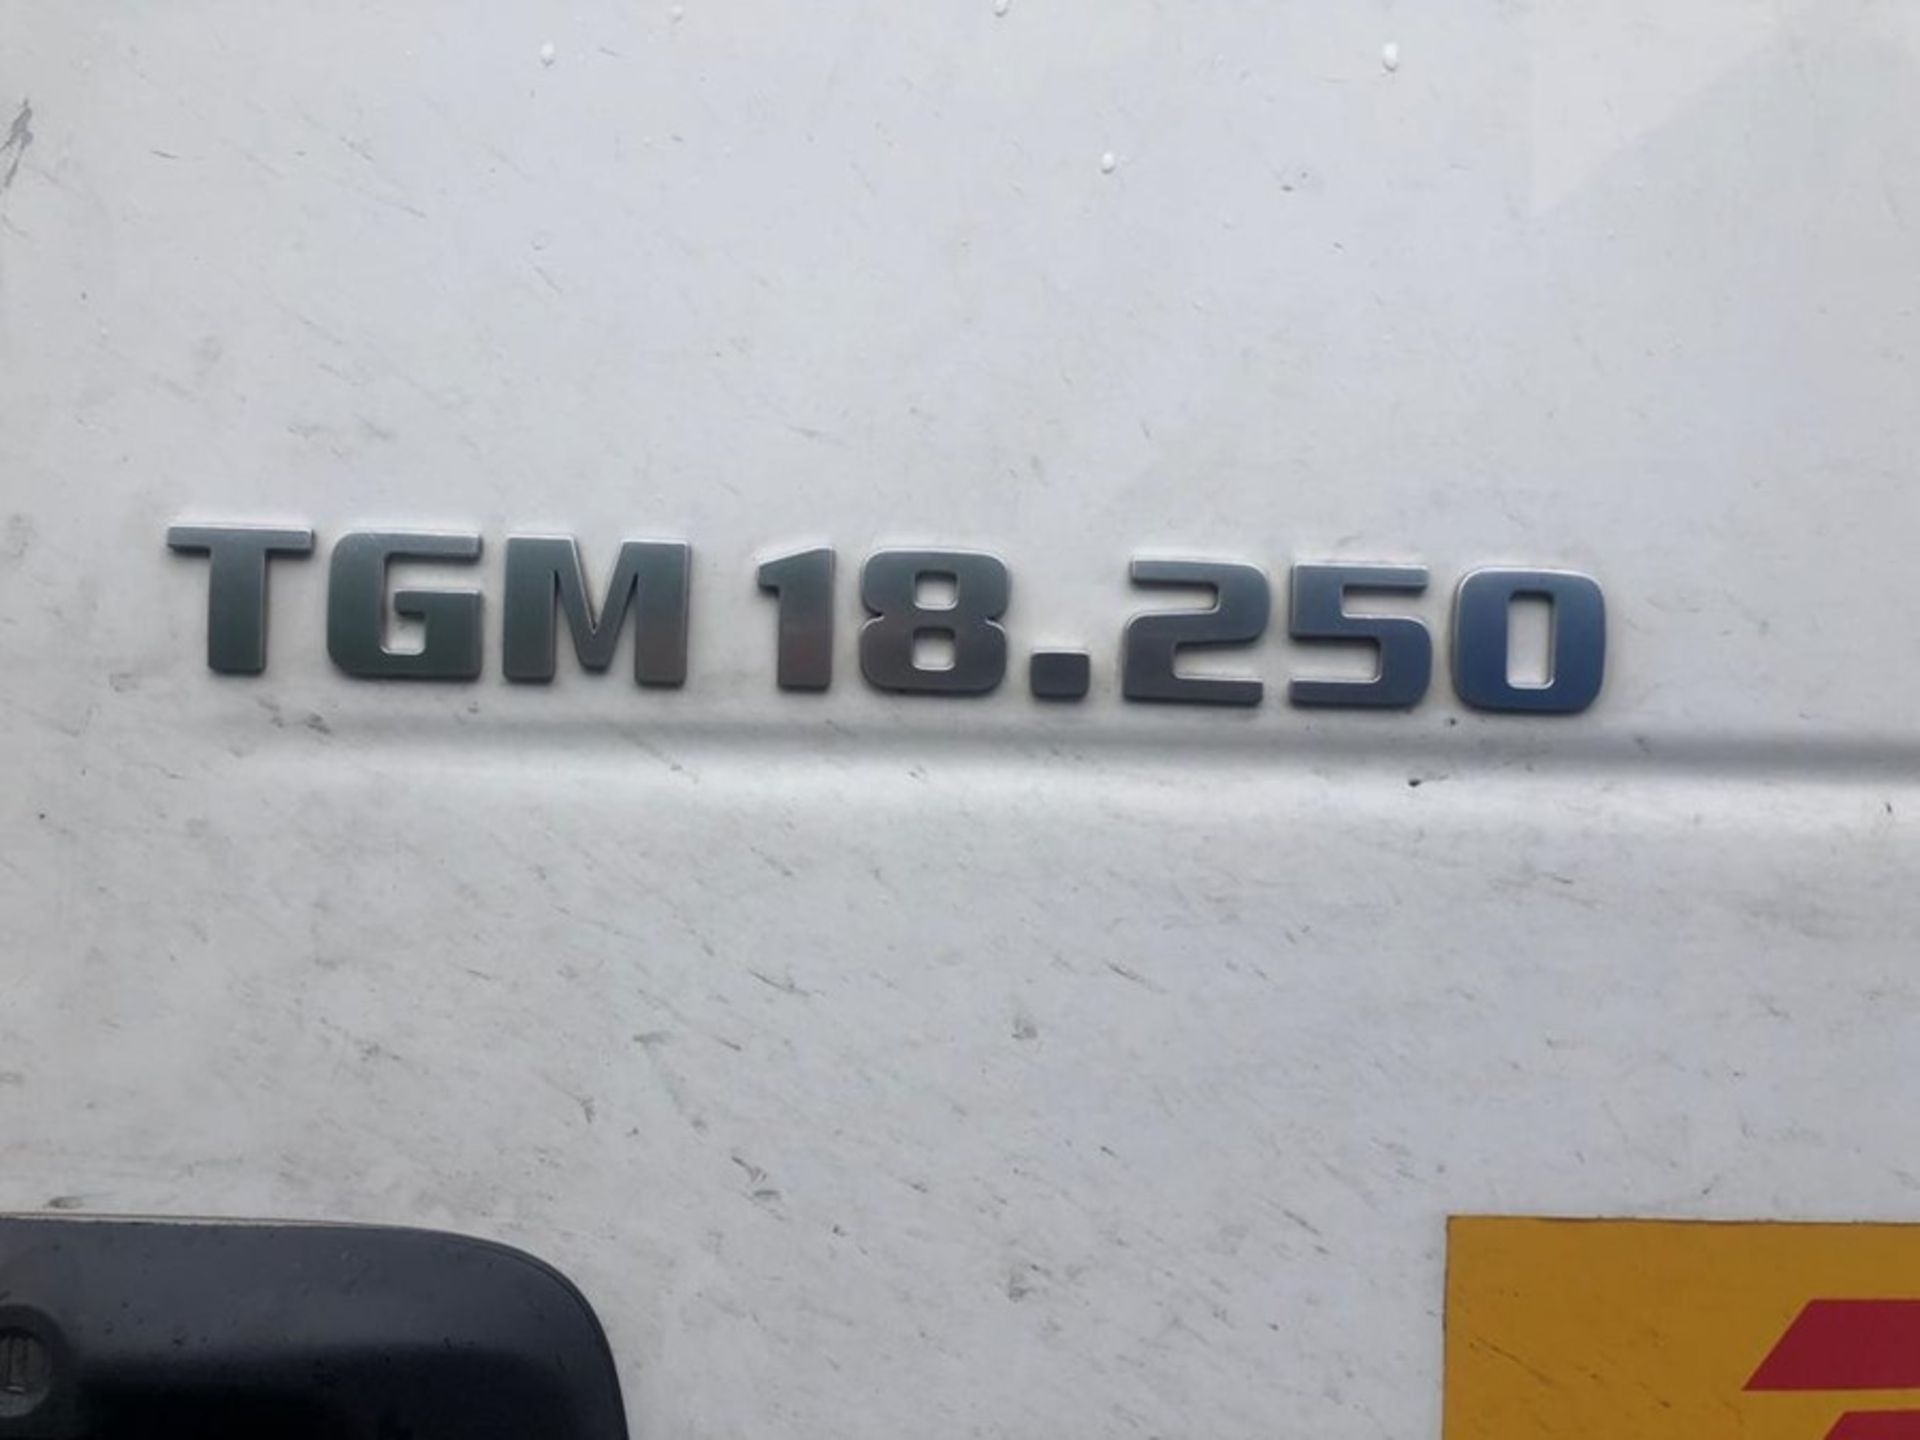 MAN TGM 18.250 4x2 BL Euro 6 Rigid Box (DF14 EZL) - Image 10 of 10